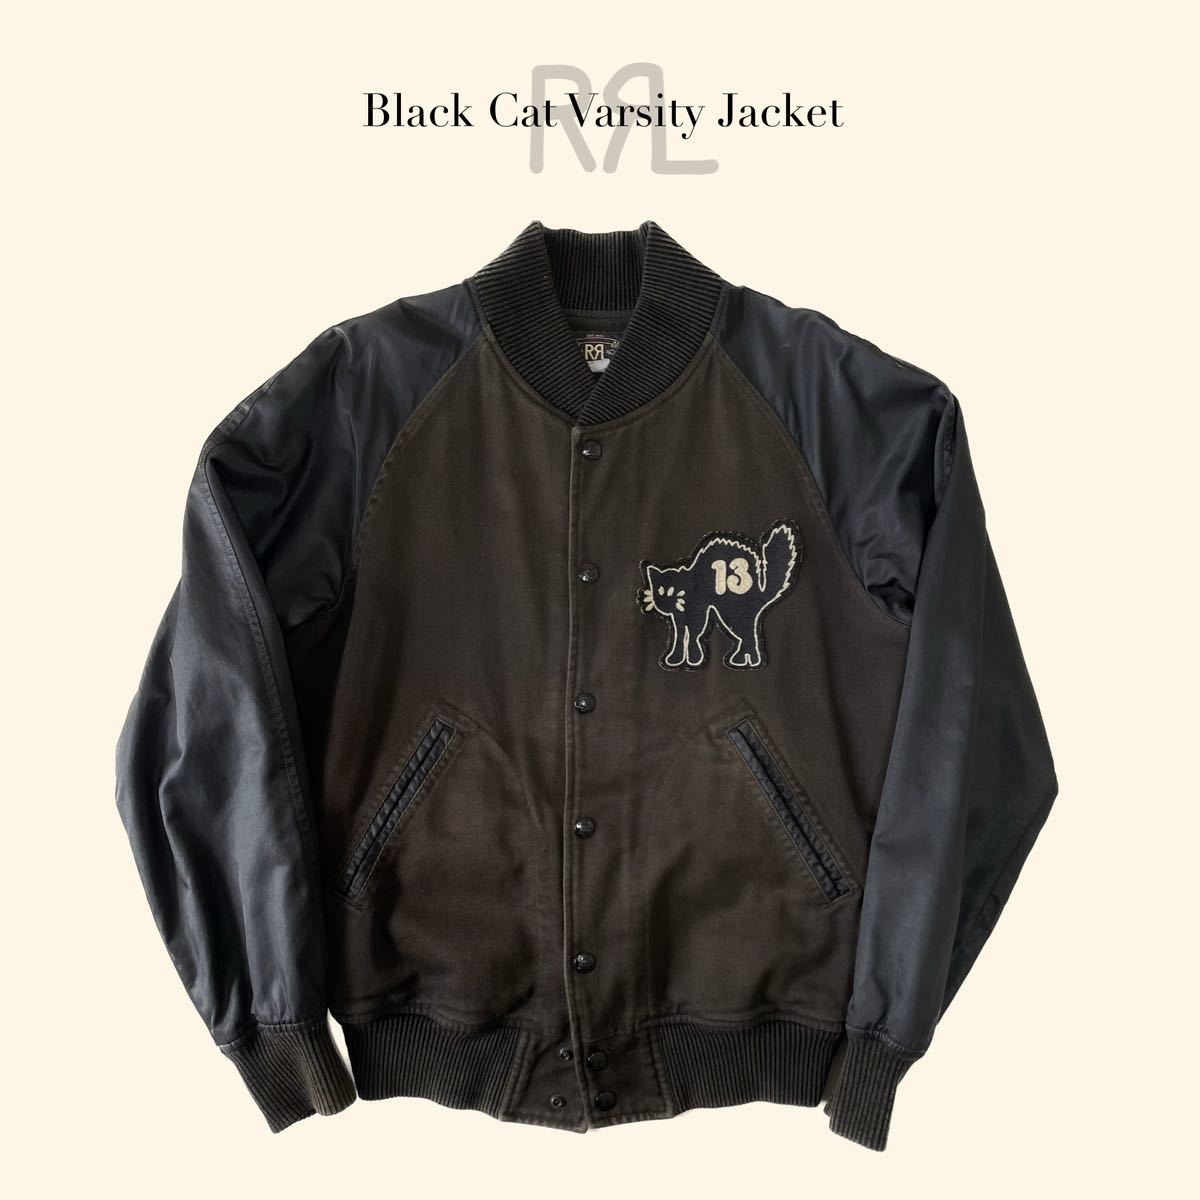 【傑作】RRL “Black Cat Varsity Jacket” S スタジャン ブラックキャット 黒 バーシティ ジャケット Ralph  Lauren ヴィンテージ